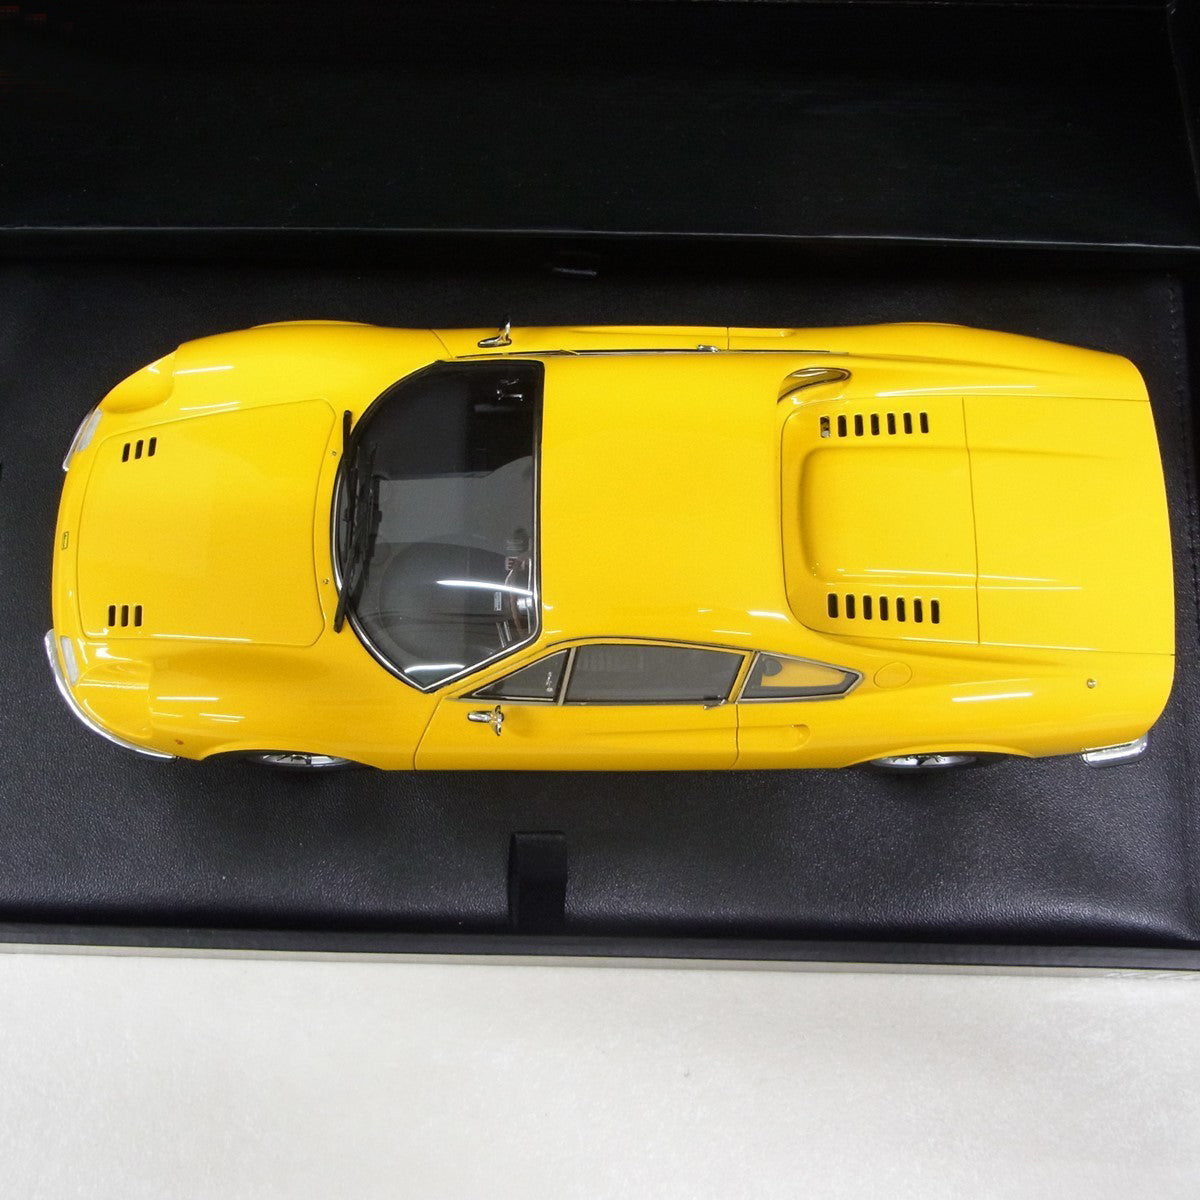 Kyosho 1:18 Ferrari Dino 246 GT Type L Yellow PMK1804Y